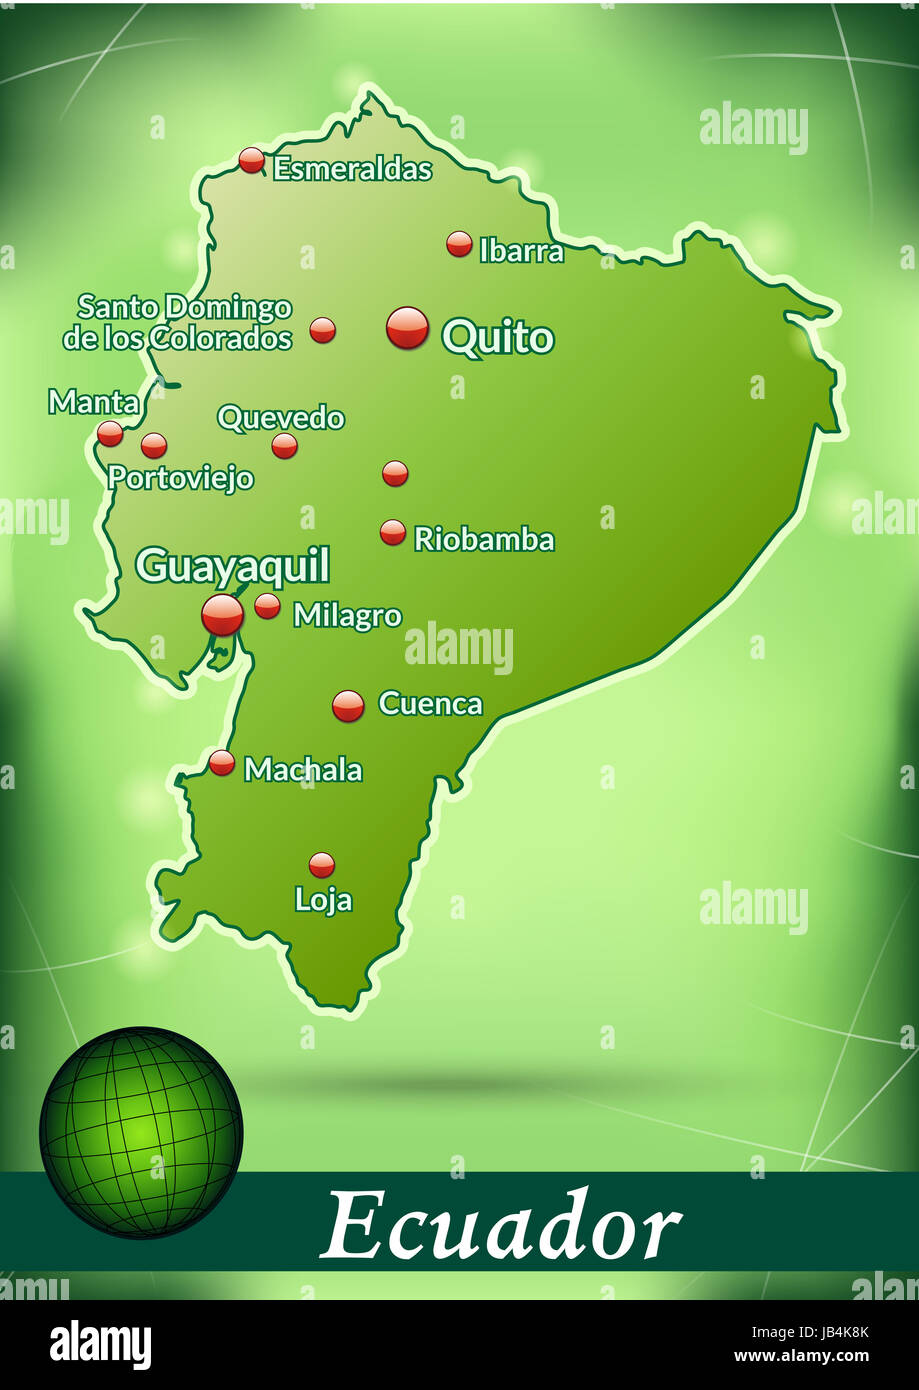 Ecuador in  Suedamerika als Inselkarte mit abstraktem Hintergrund  in Grün. Durch die ansprechende Gestaltung fügt sich die Karte perfekt in Ihr Vorhaben ein. Stock Photo